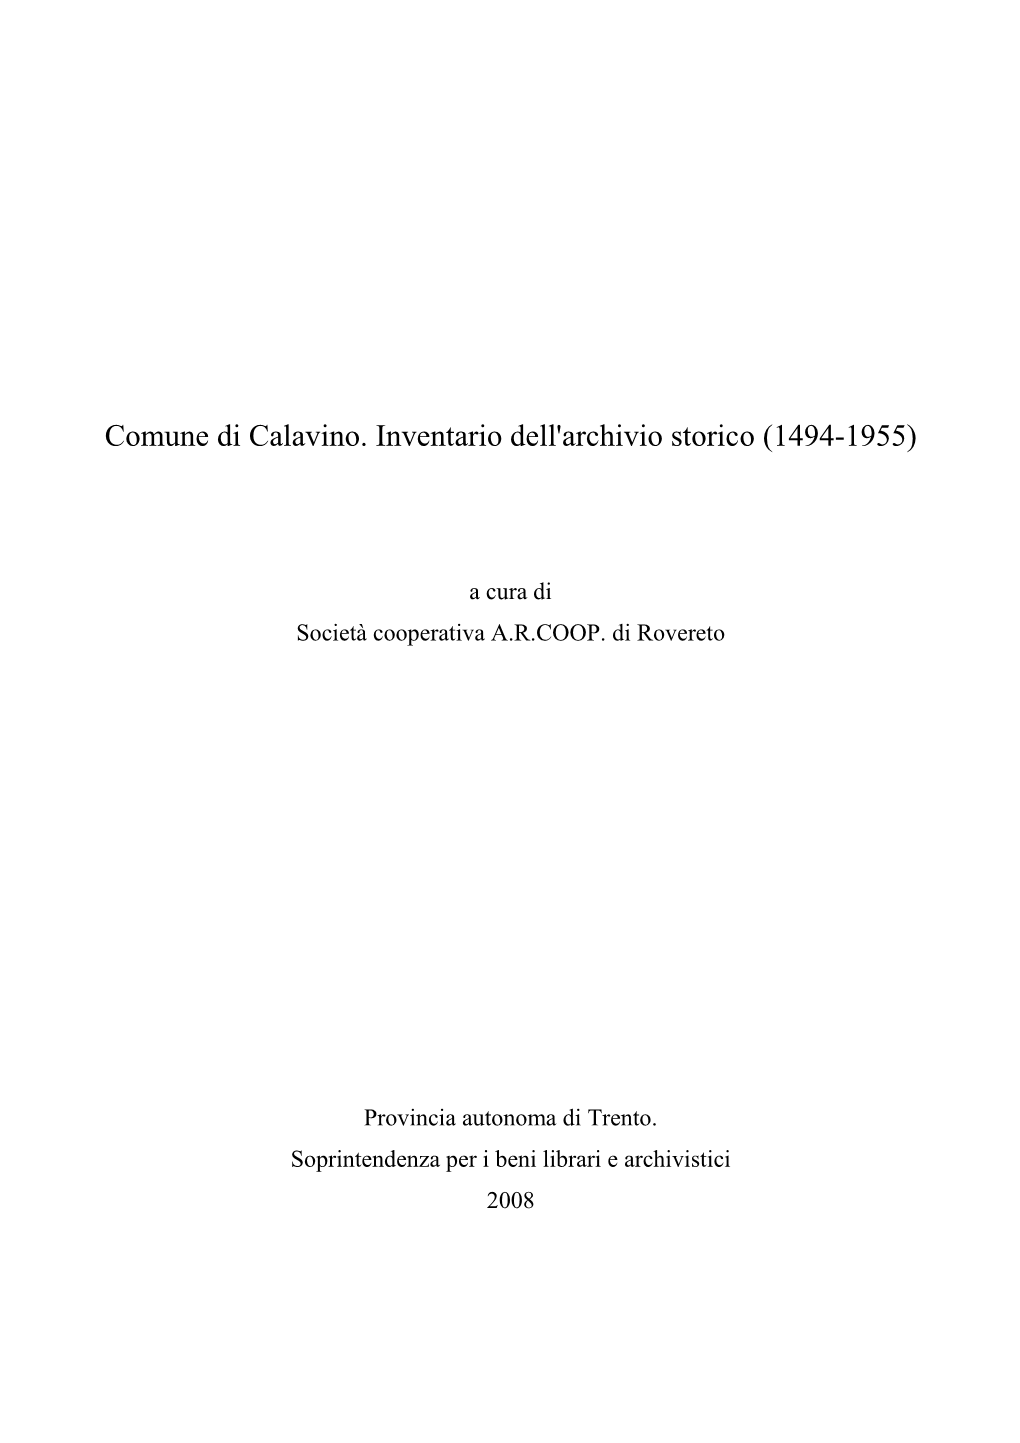 Comune Di Calavino. Inventario Dell'archivio Storico (1494-1955)